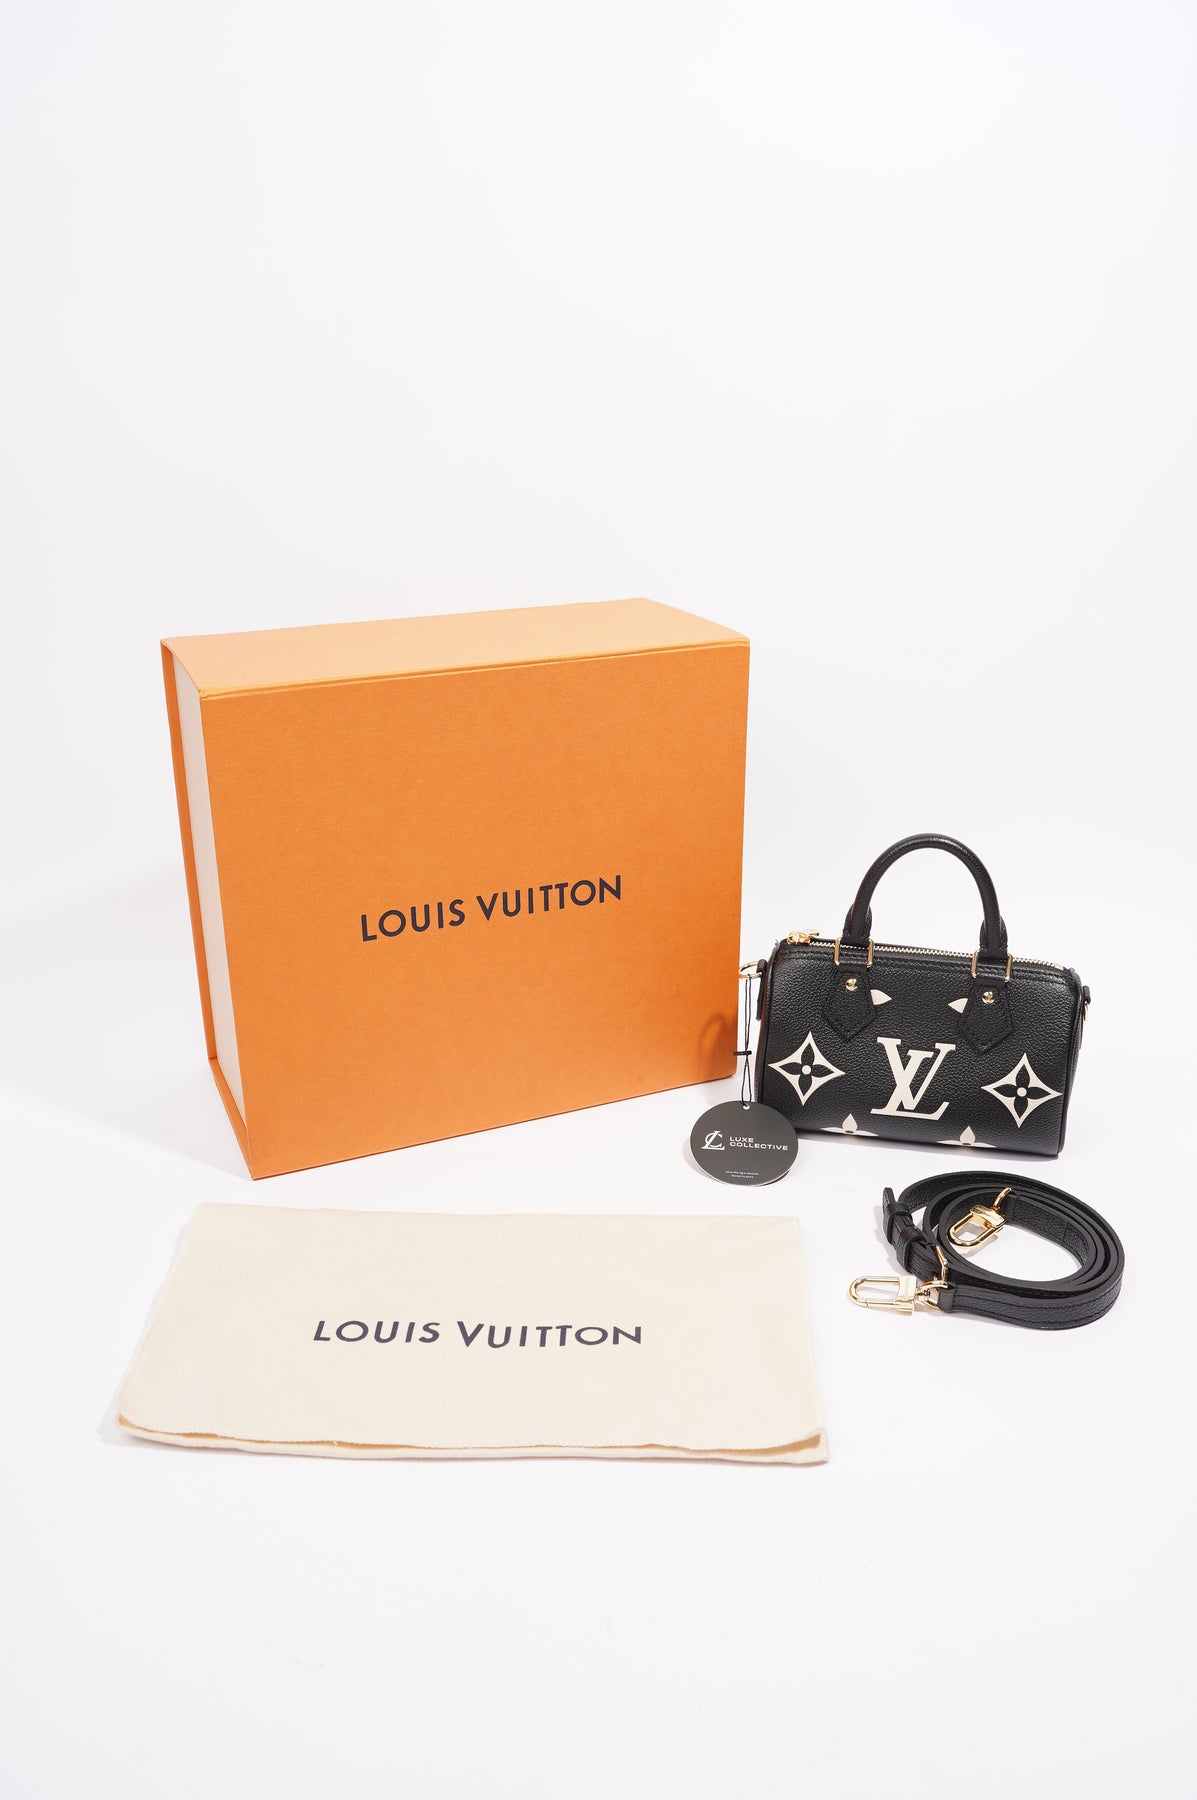 Louis Vuitton Nano Speedy Black/Beige Monogram Empreinte